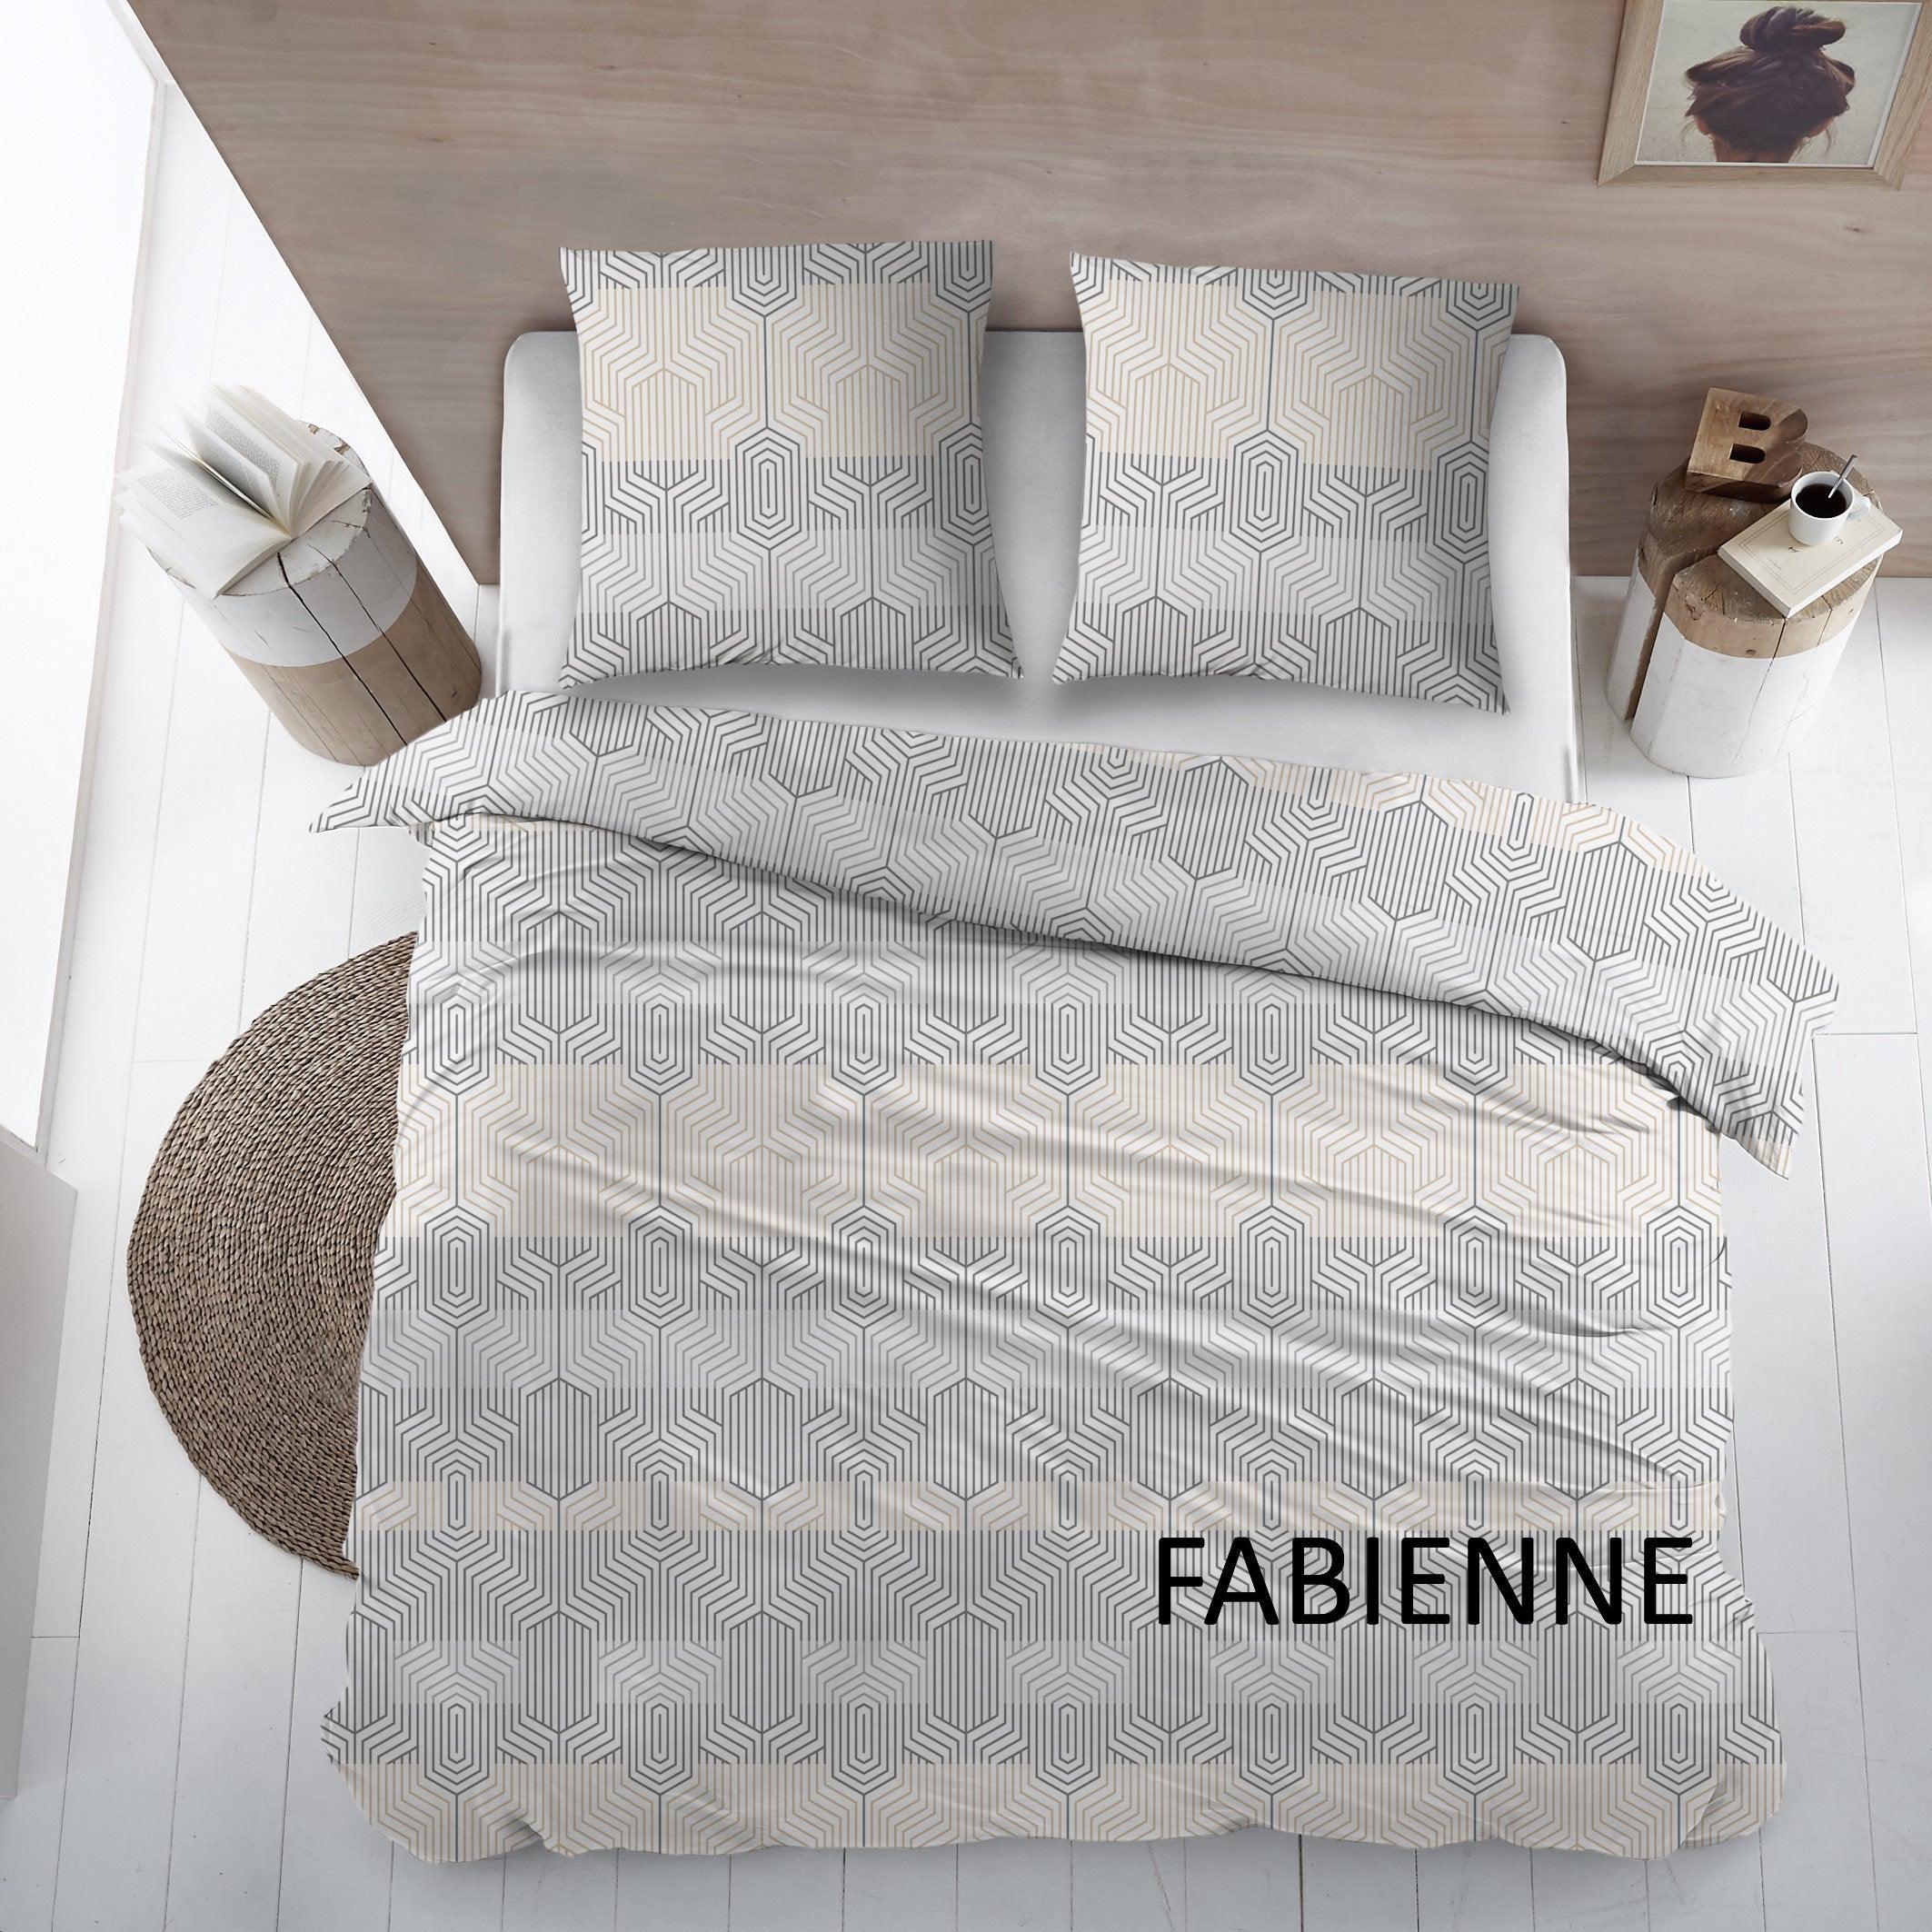 Cottons Dekbedovertrek Fabienne Flanel - Bedtextielonline.be